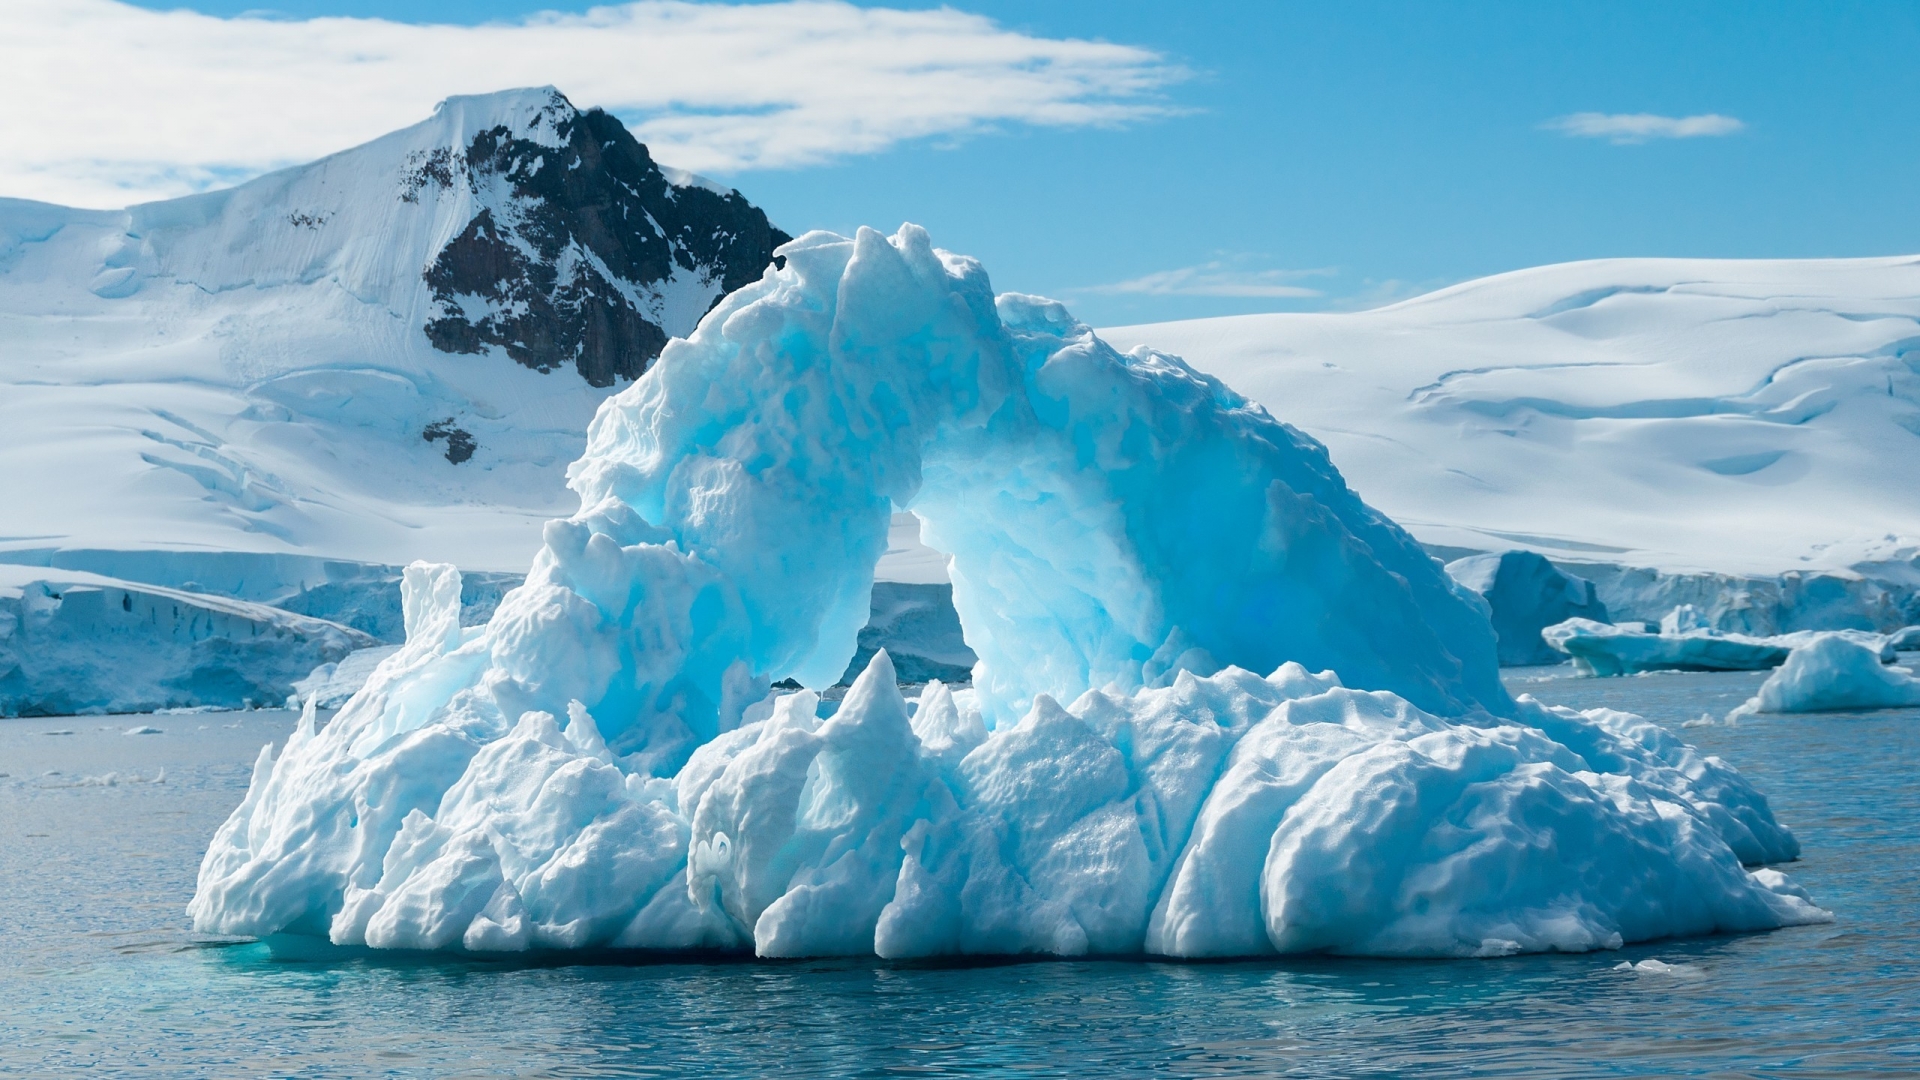 Blue Iceberg for 1920 x 1080 HDTV 1080p resolution